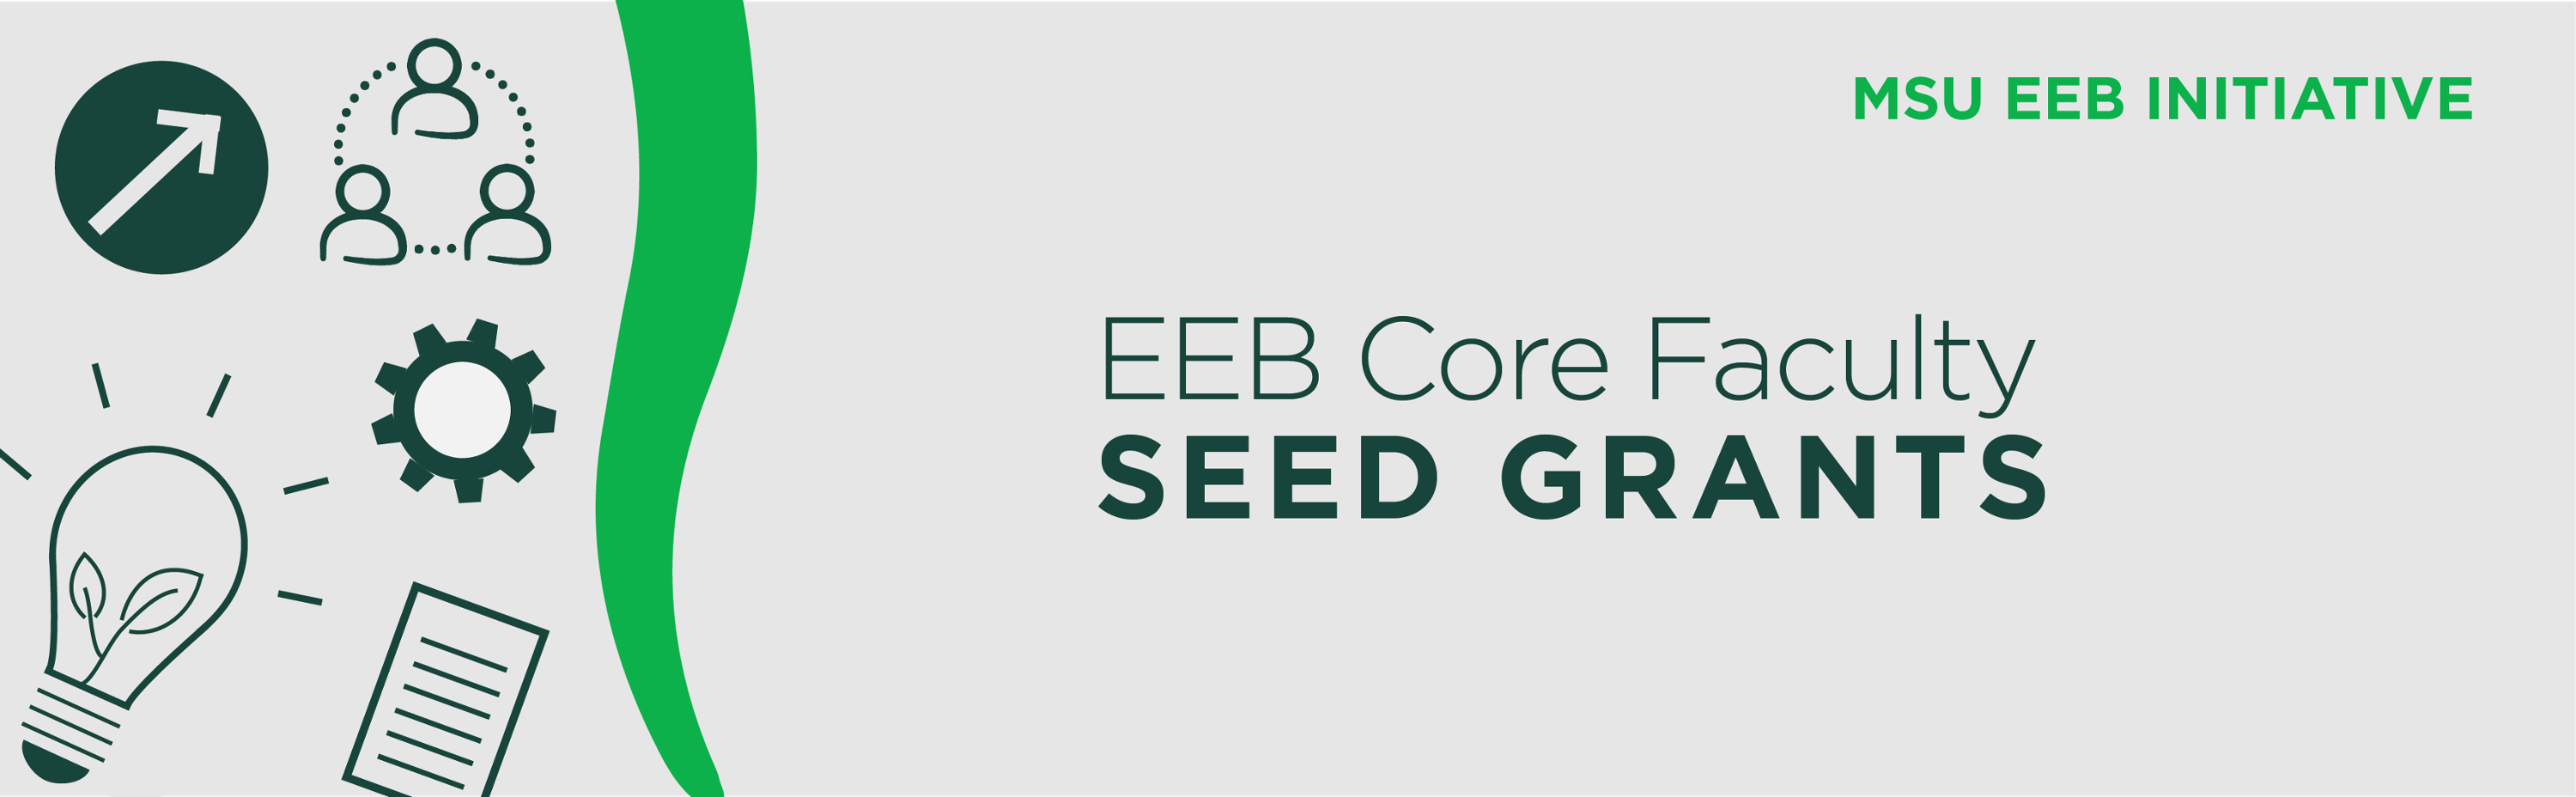 EEB Seed Grant Program Header